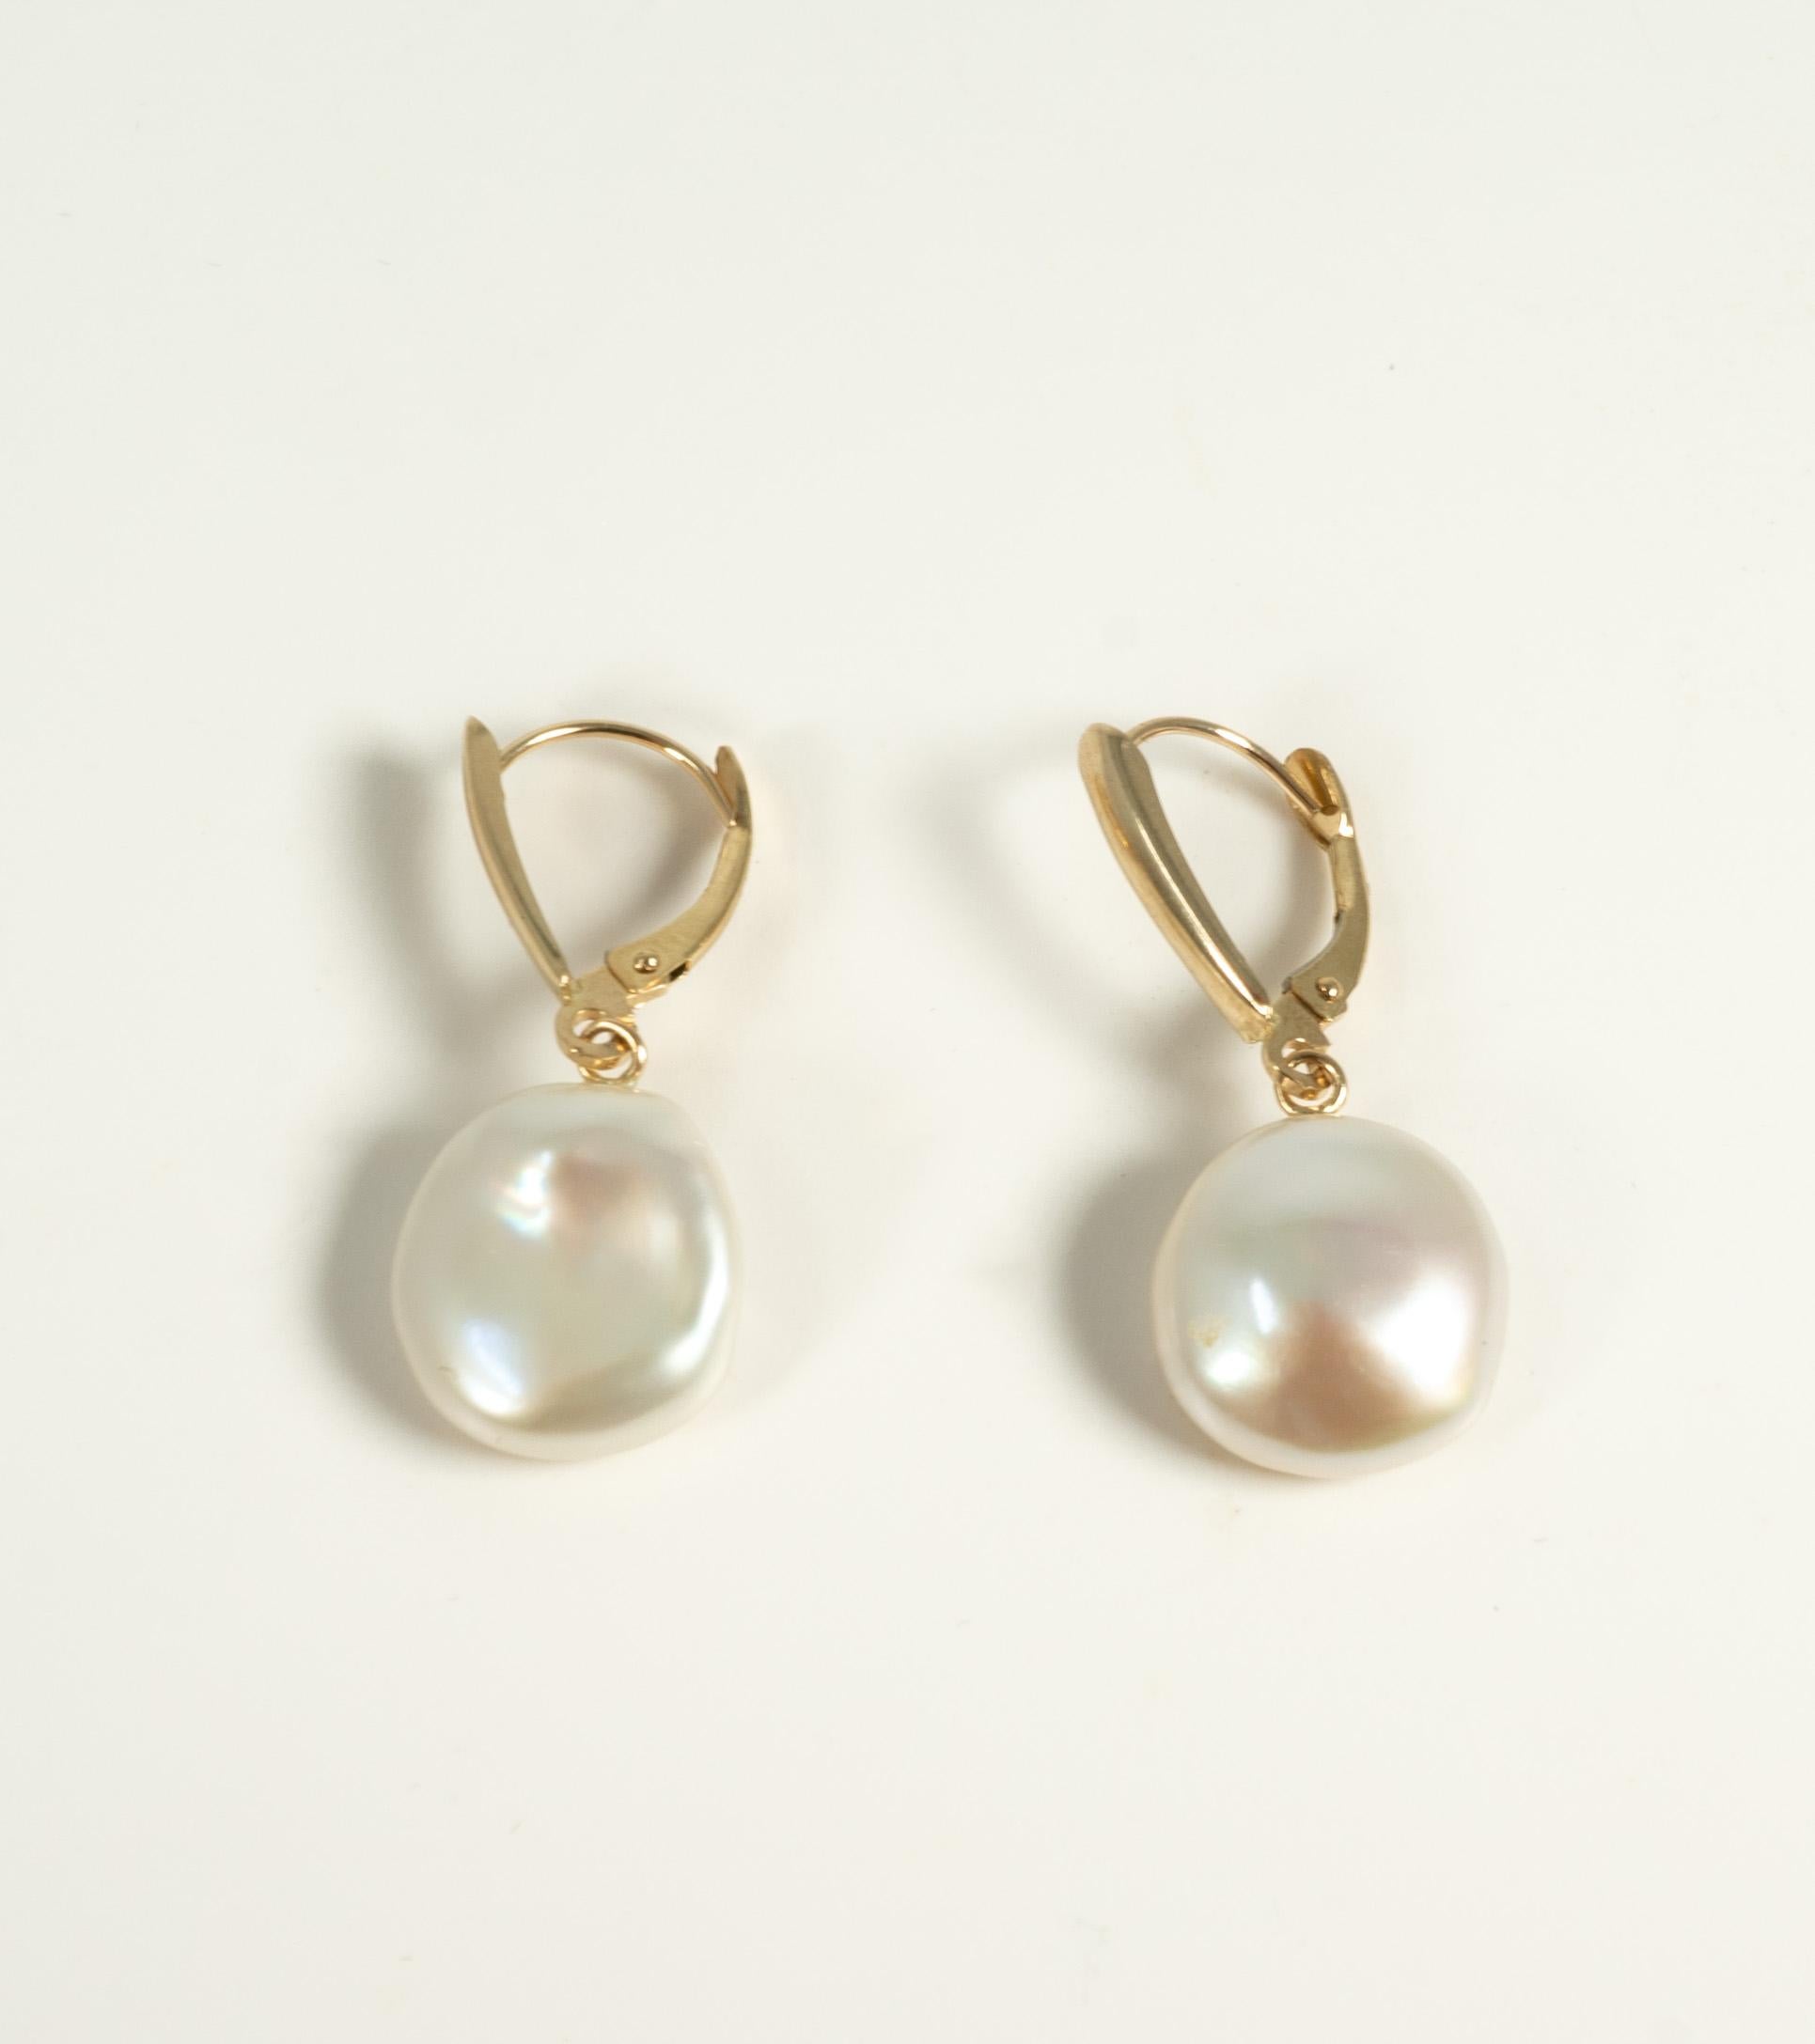 Fabriquées par Honora, ces boucles d'oreilles en or jaune 14 carats sont fixées par un dos à levier et suspendent des perles de monnaie d'eau douce.